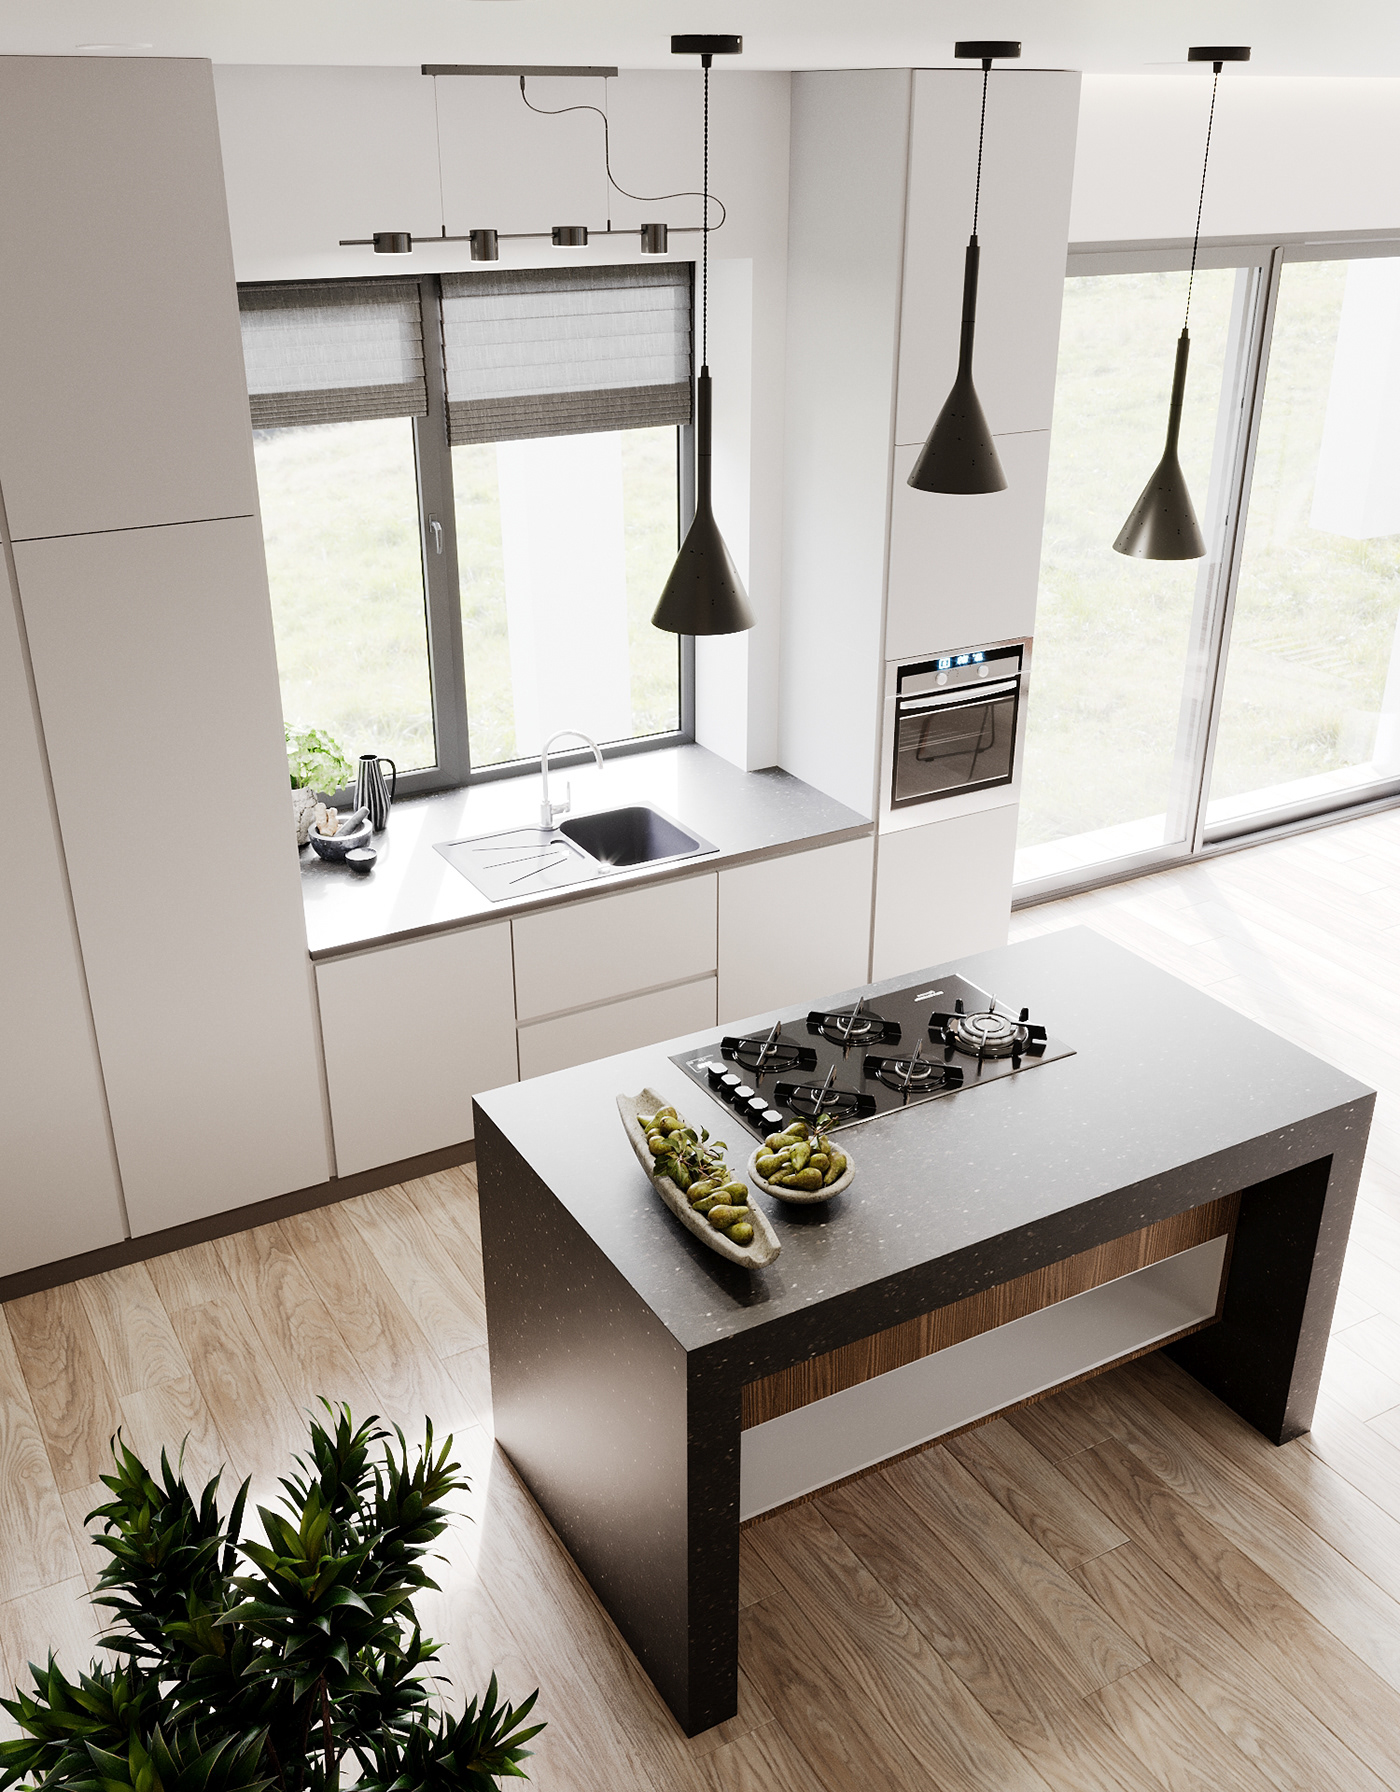 3ds max corona renderer design Interior визуализация дизайн дома дизайн интерьера кухня-гостиная минимализм современный интерьер